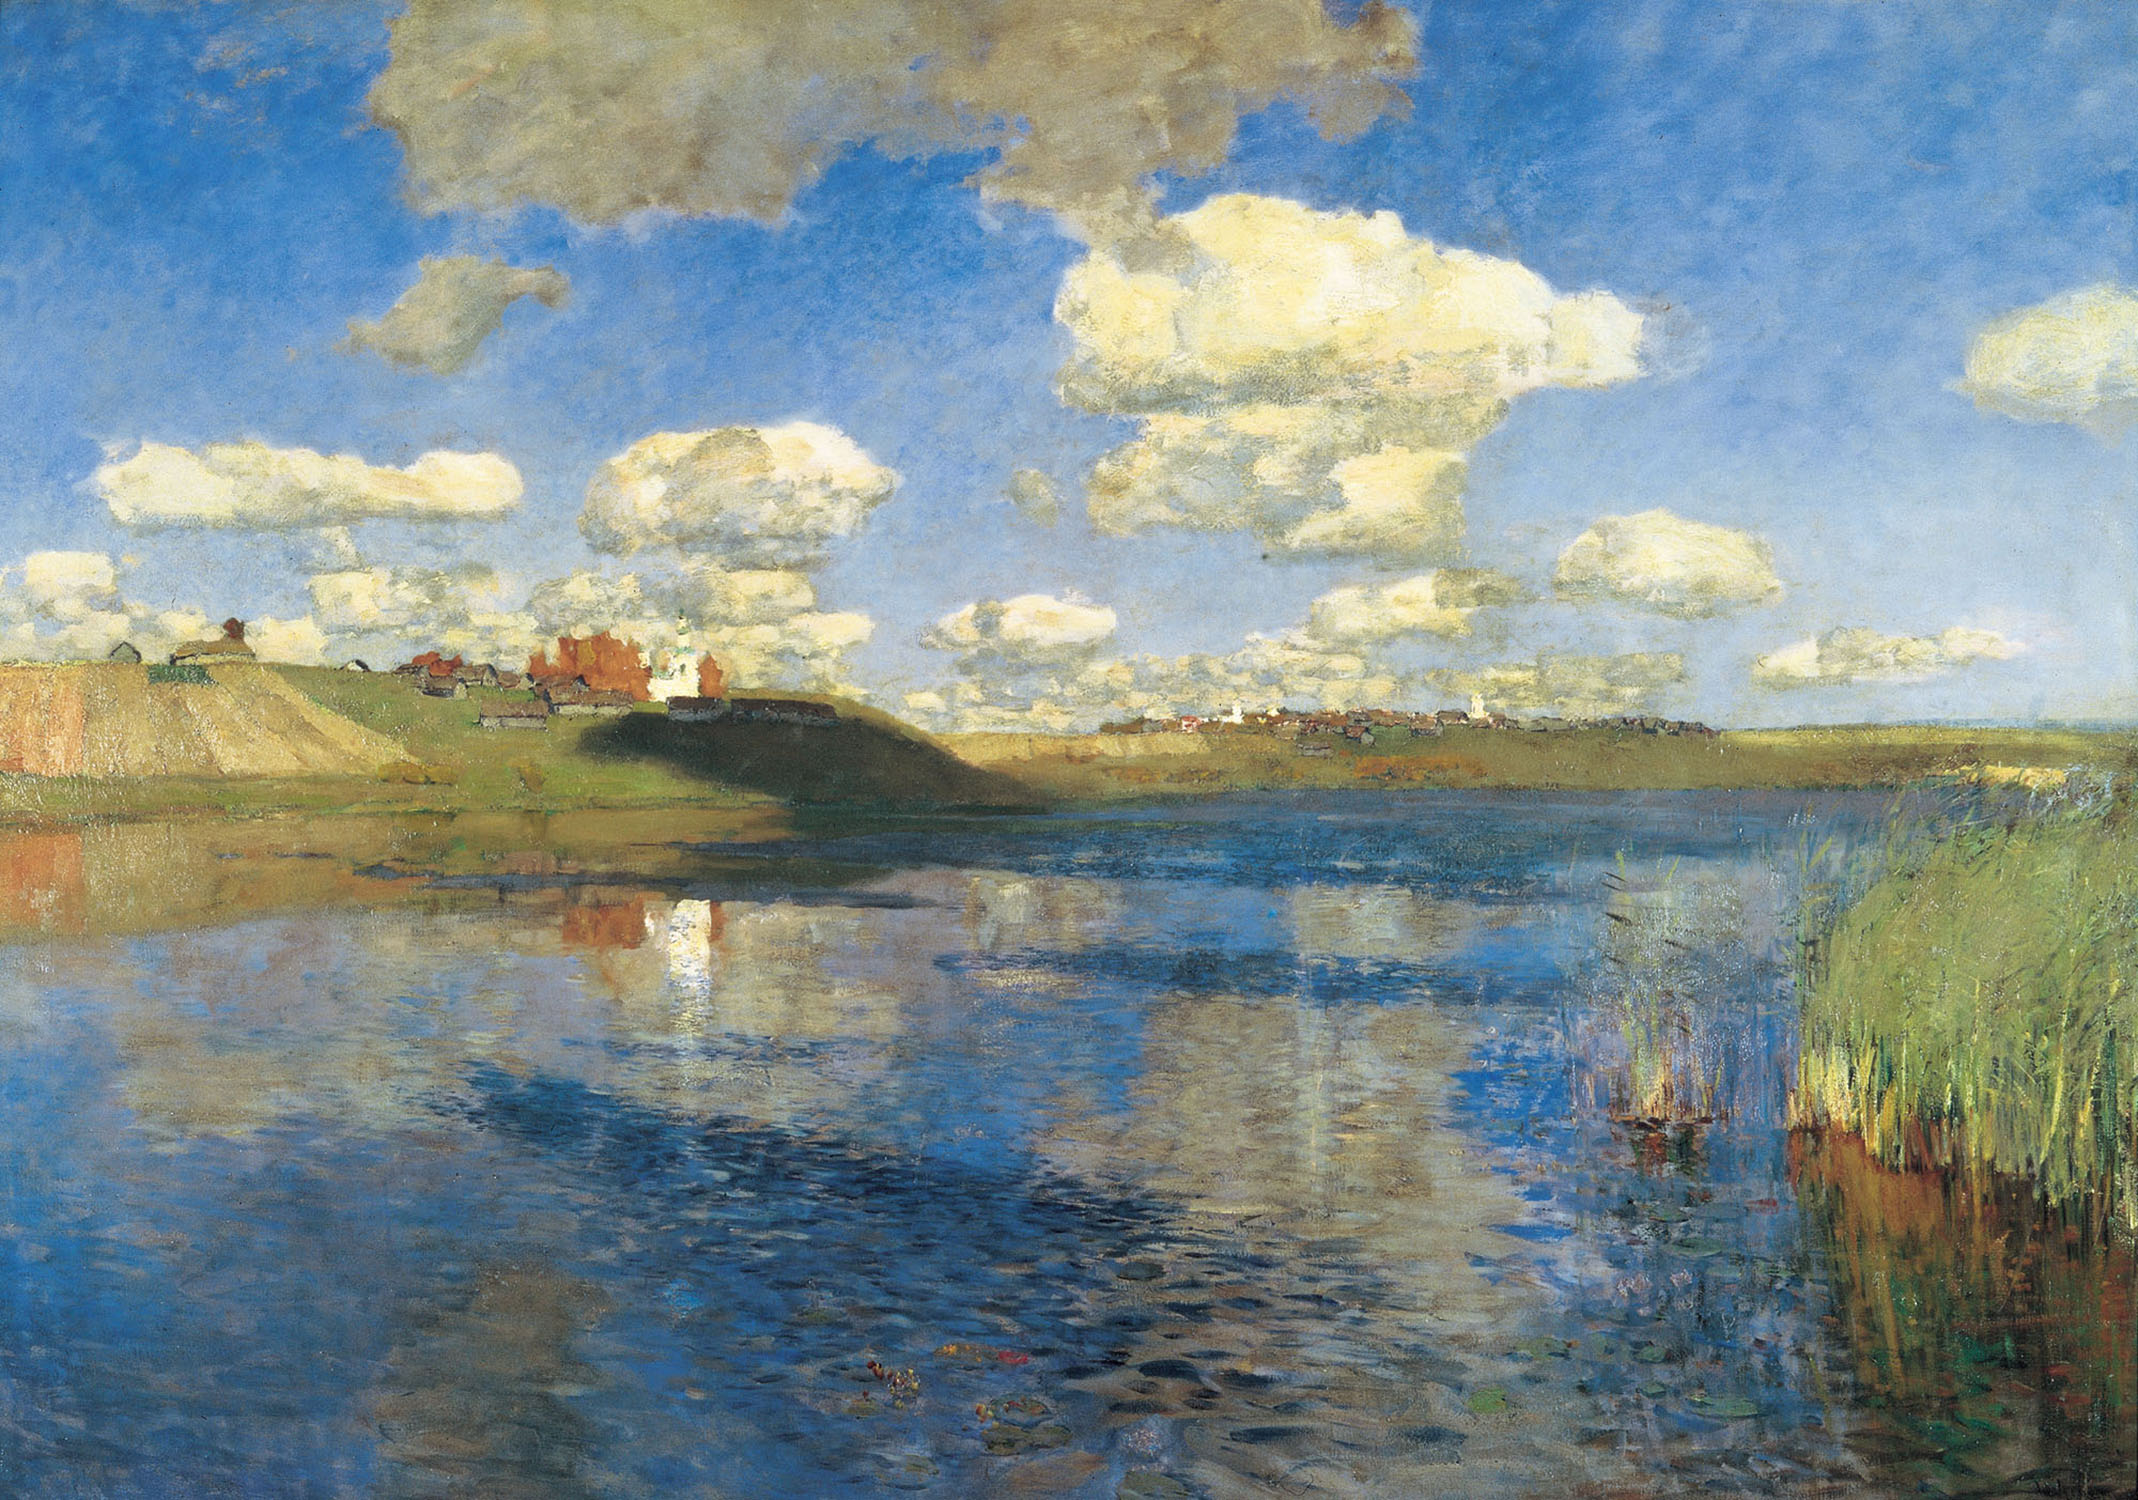 湖 by Isaac Ilich Levitan - 1899–1900 - 149 x 208 cm 